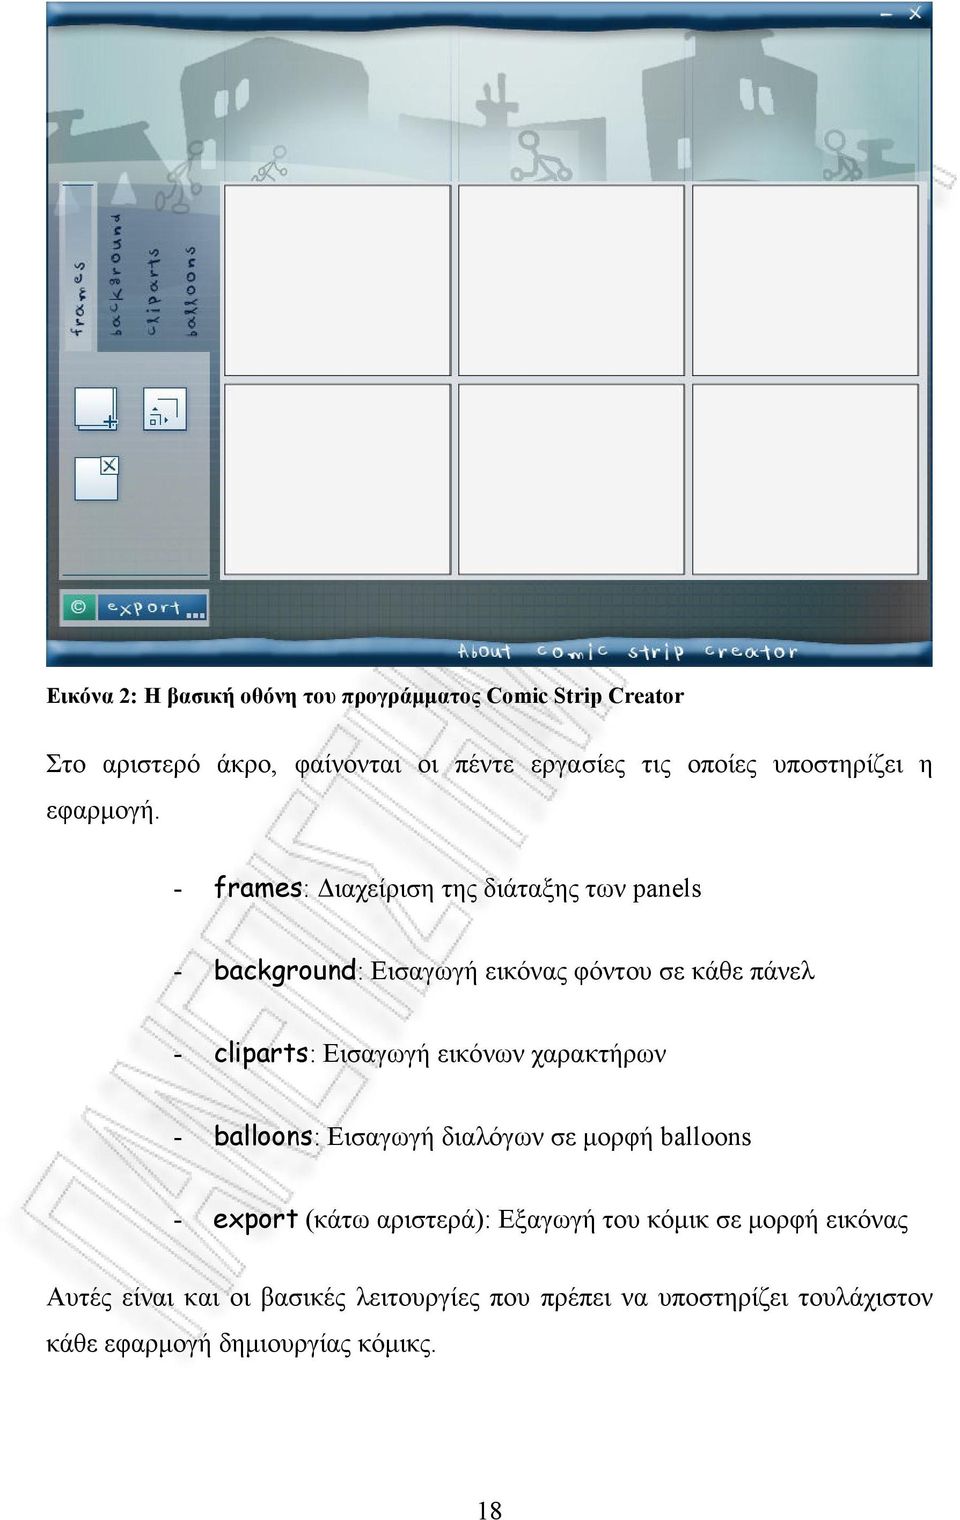 - frames: ιαχείριση της διάταξης των panels - background: Εισαγωγή εικόνας φόντου σε κάθε πάνελ - cliparts: Εισαγωγή εικόνων